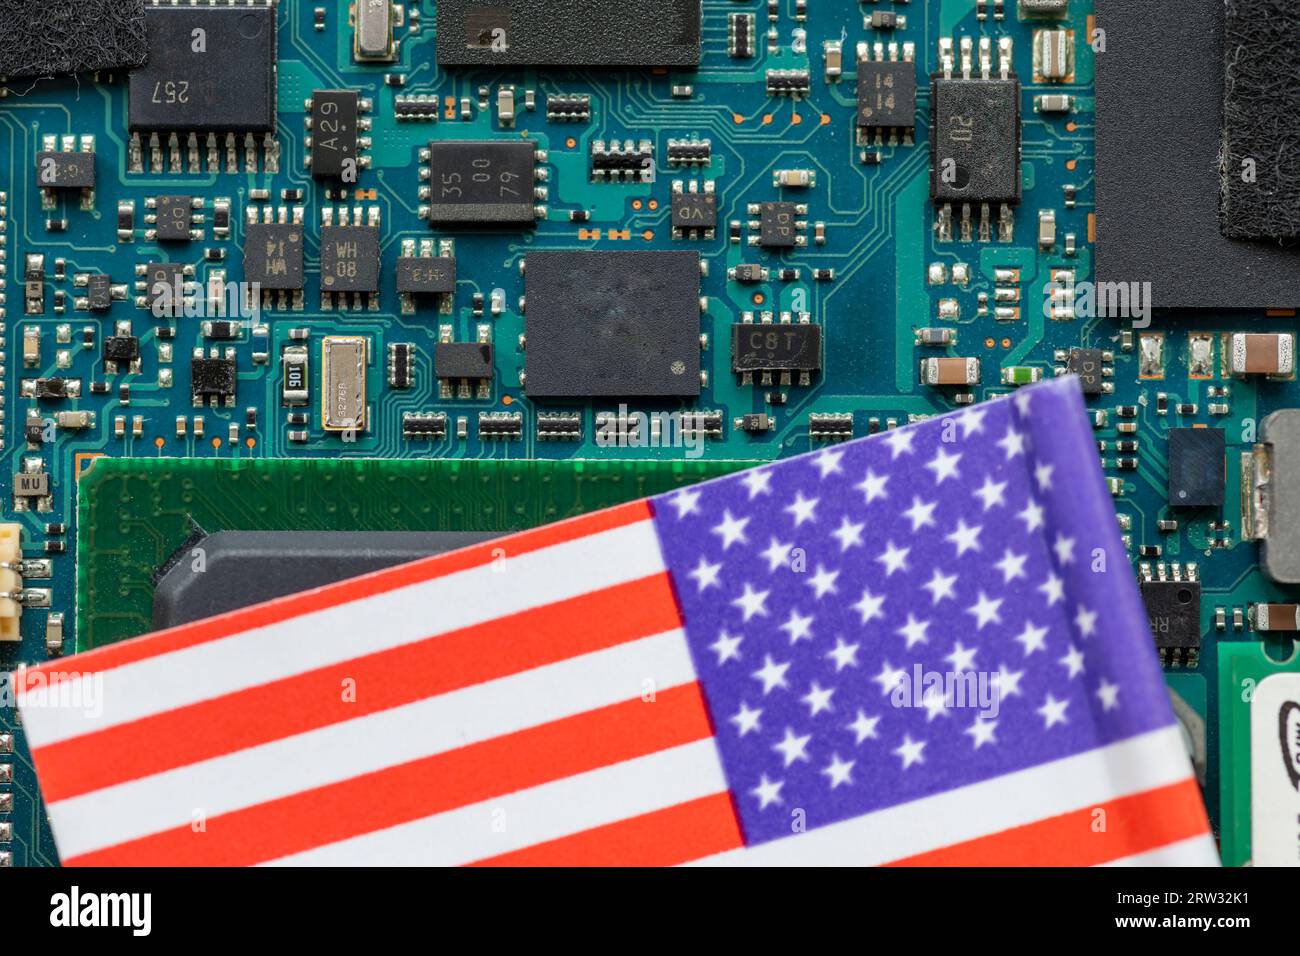 Ein amerikanisches Technologiekonzept mit einer amerikanischen Flagge auf einer Halbleiterplatine. Stockfoto